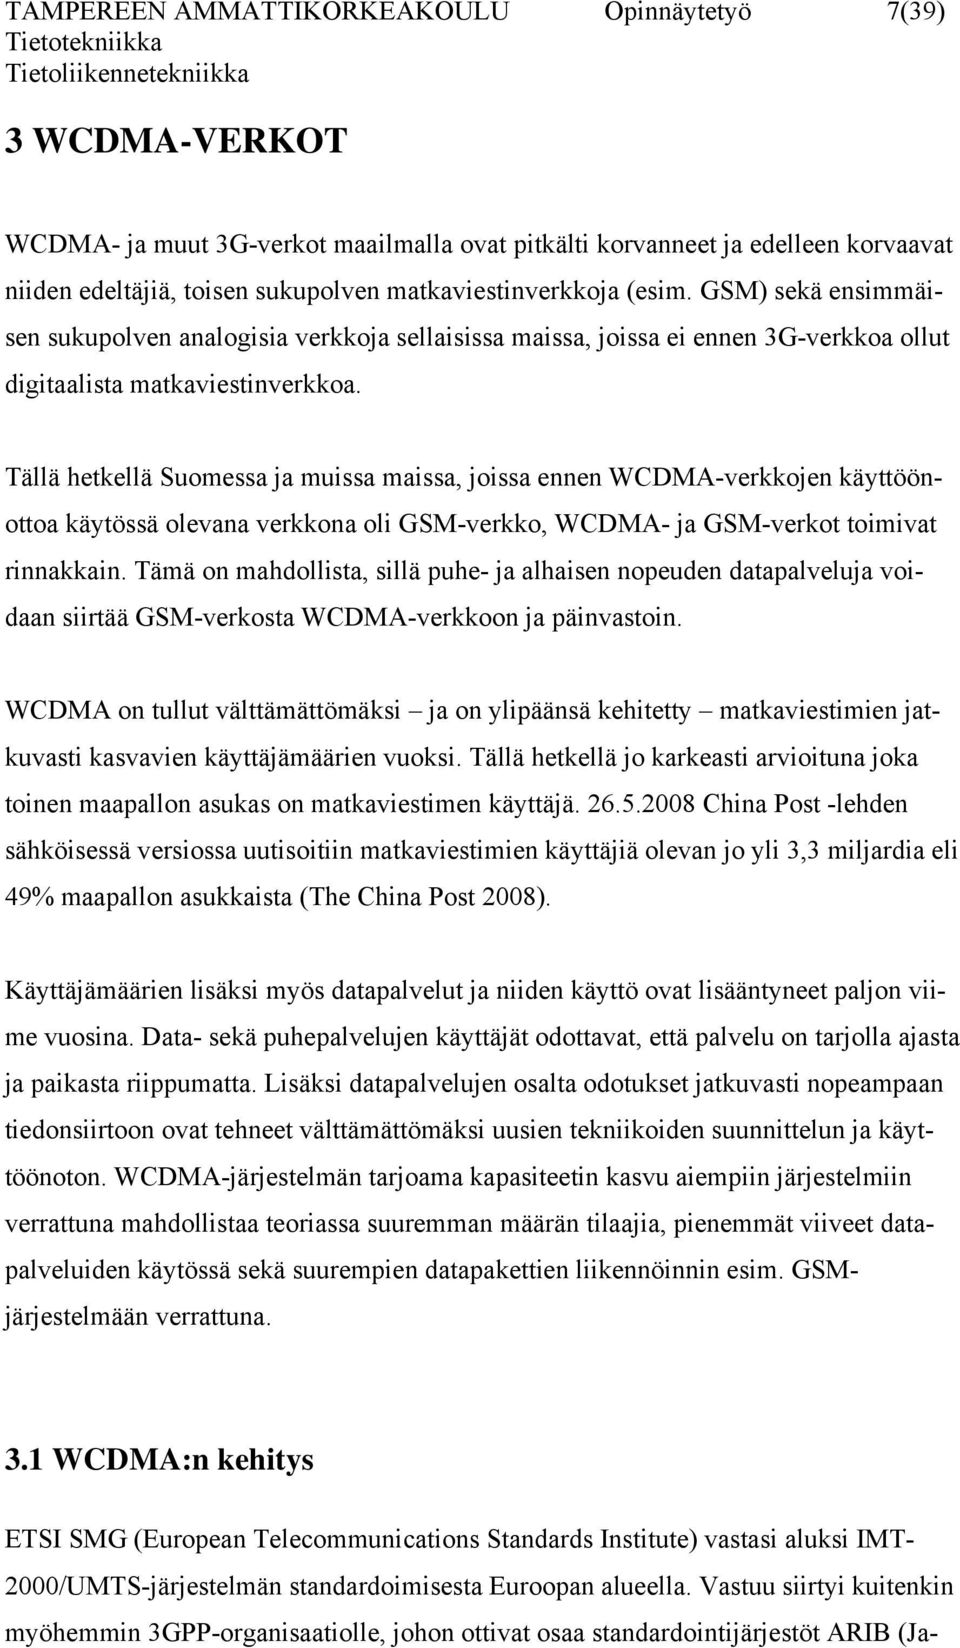 Tällä hetkellä Suomessa ja muissa maissa, joissa ennen WCDMA-verkkojen käyttöönottoa käytössä olevana verkkona oli GSM-verkko, WCDMA- ja GSM-verkot toimivat rinnakkain.